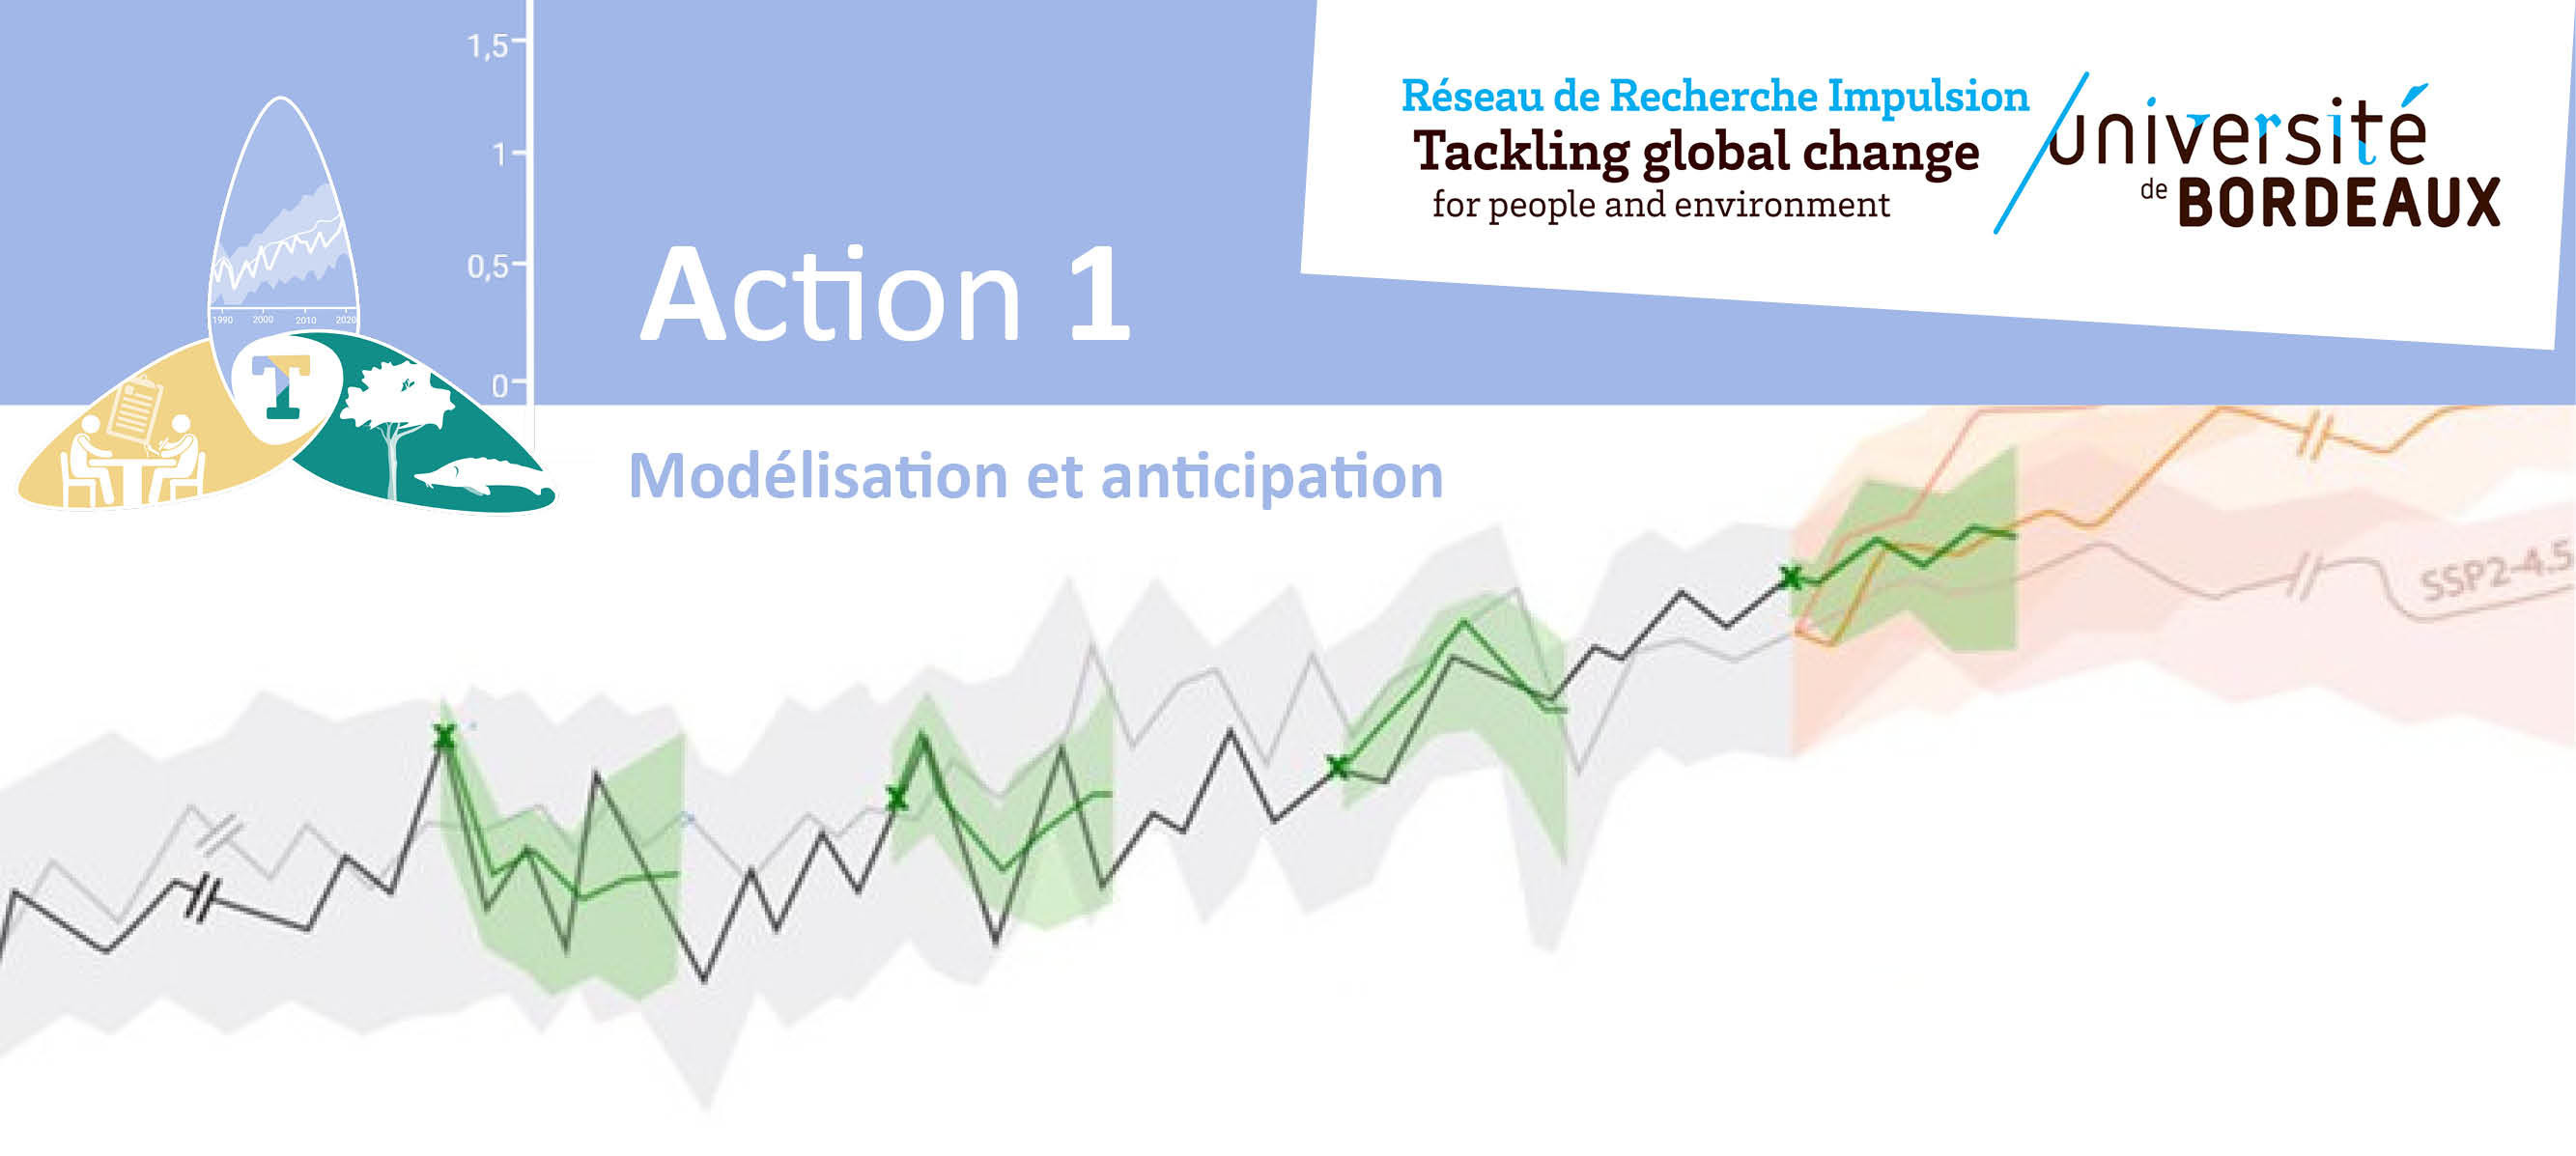 RRI Tackling_Action1 Modelisation et anticipation.jpg